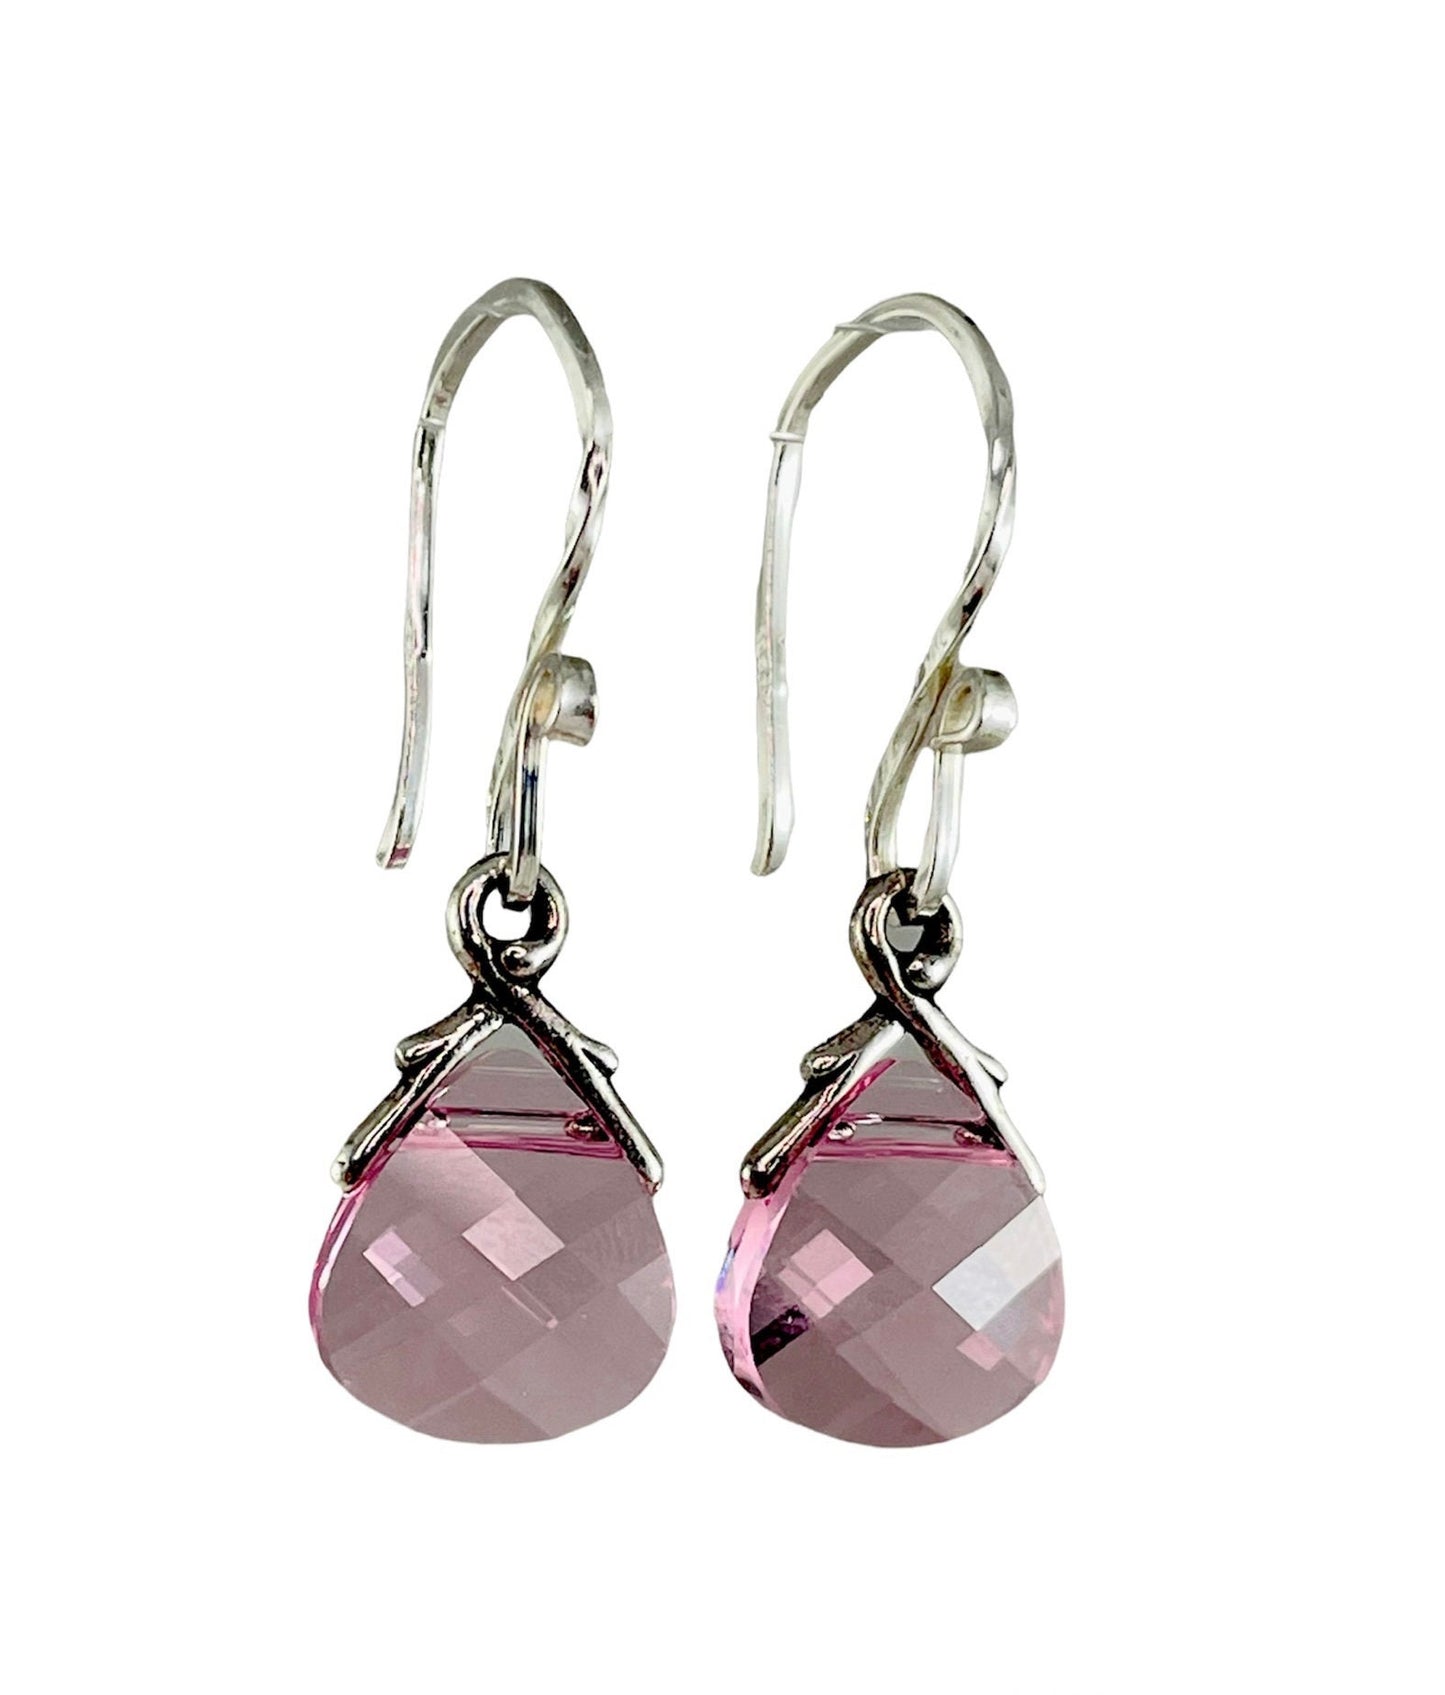 Light Pink Earrings-Light Pink Rose Crystal Briolette Earrings,Pink Crystal Earrings,Light Rose Teardrop Dangle,Bridesmaid Pink Earrings